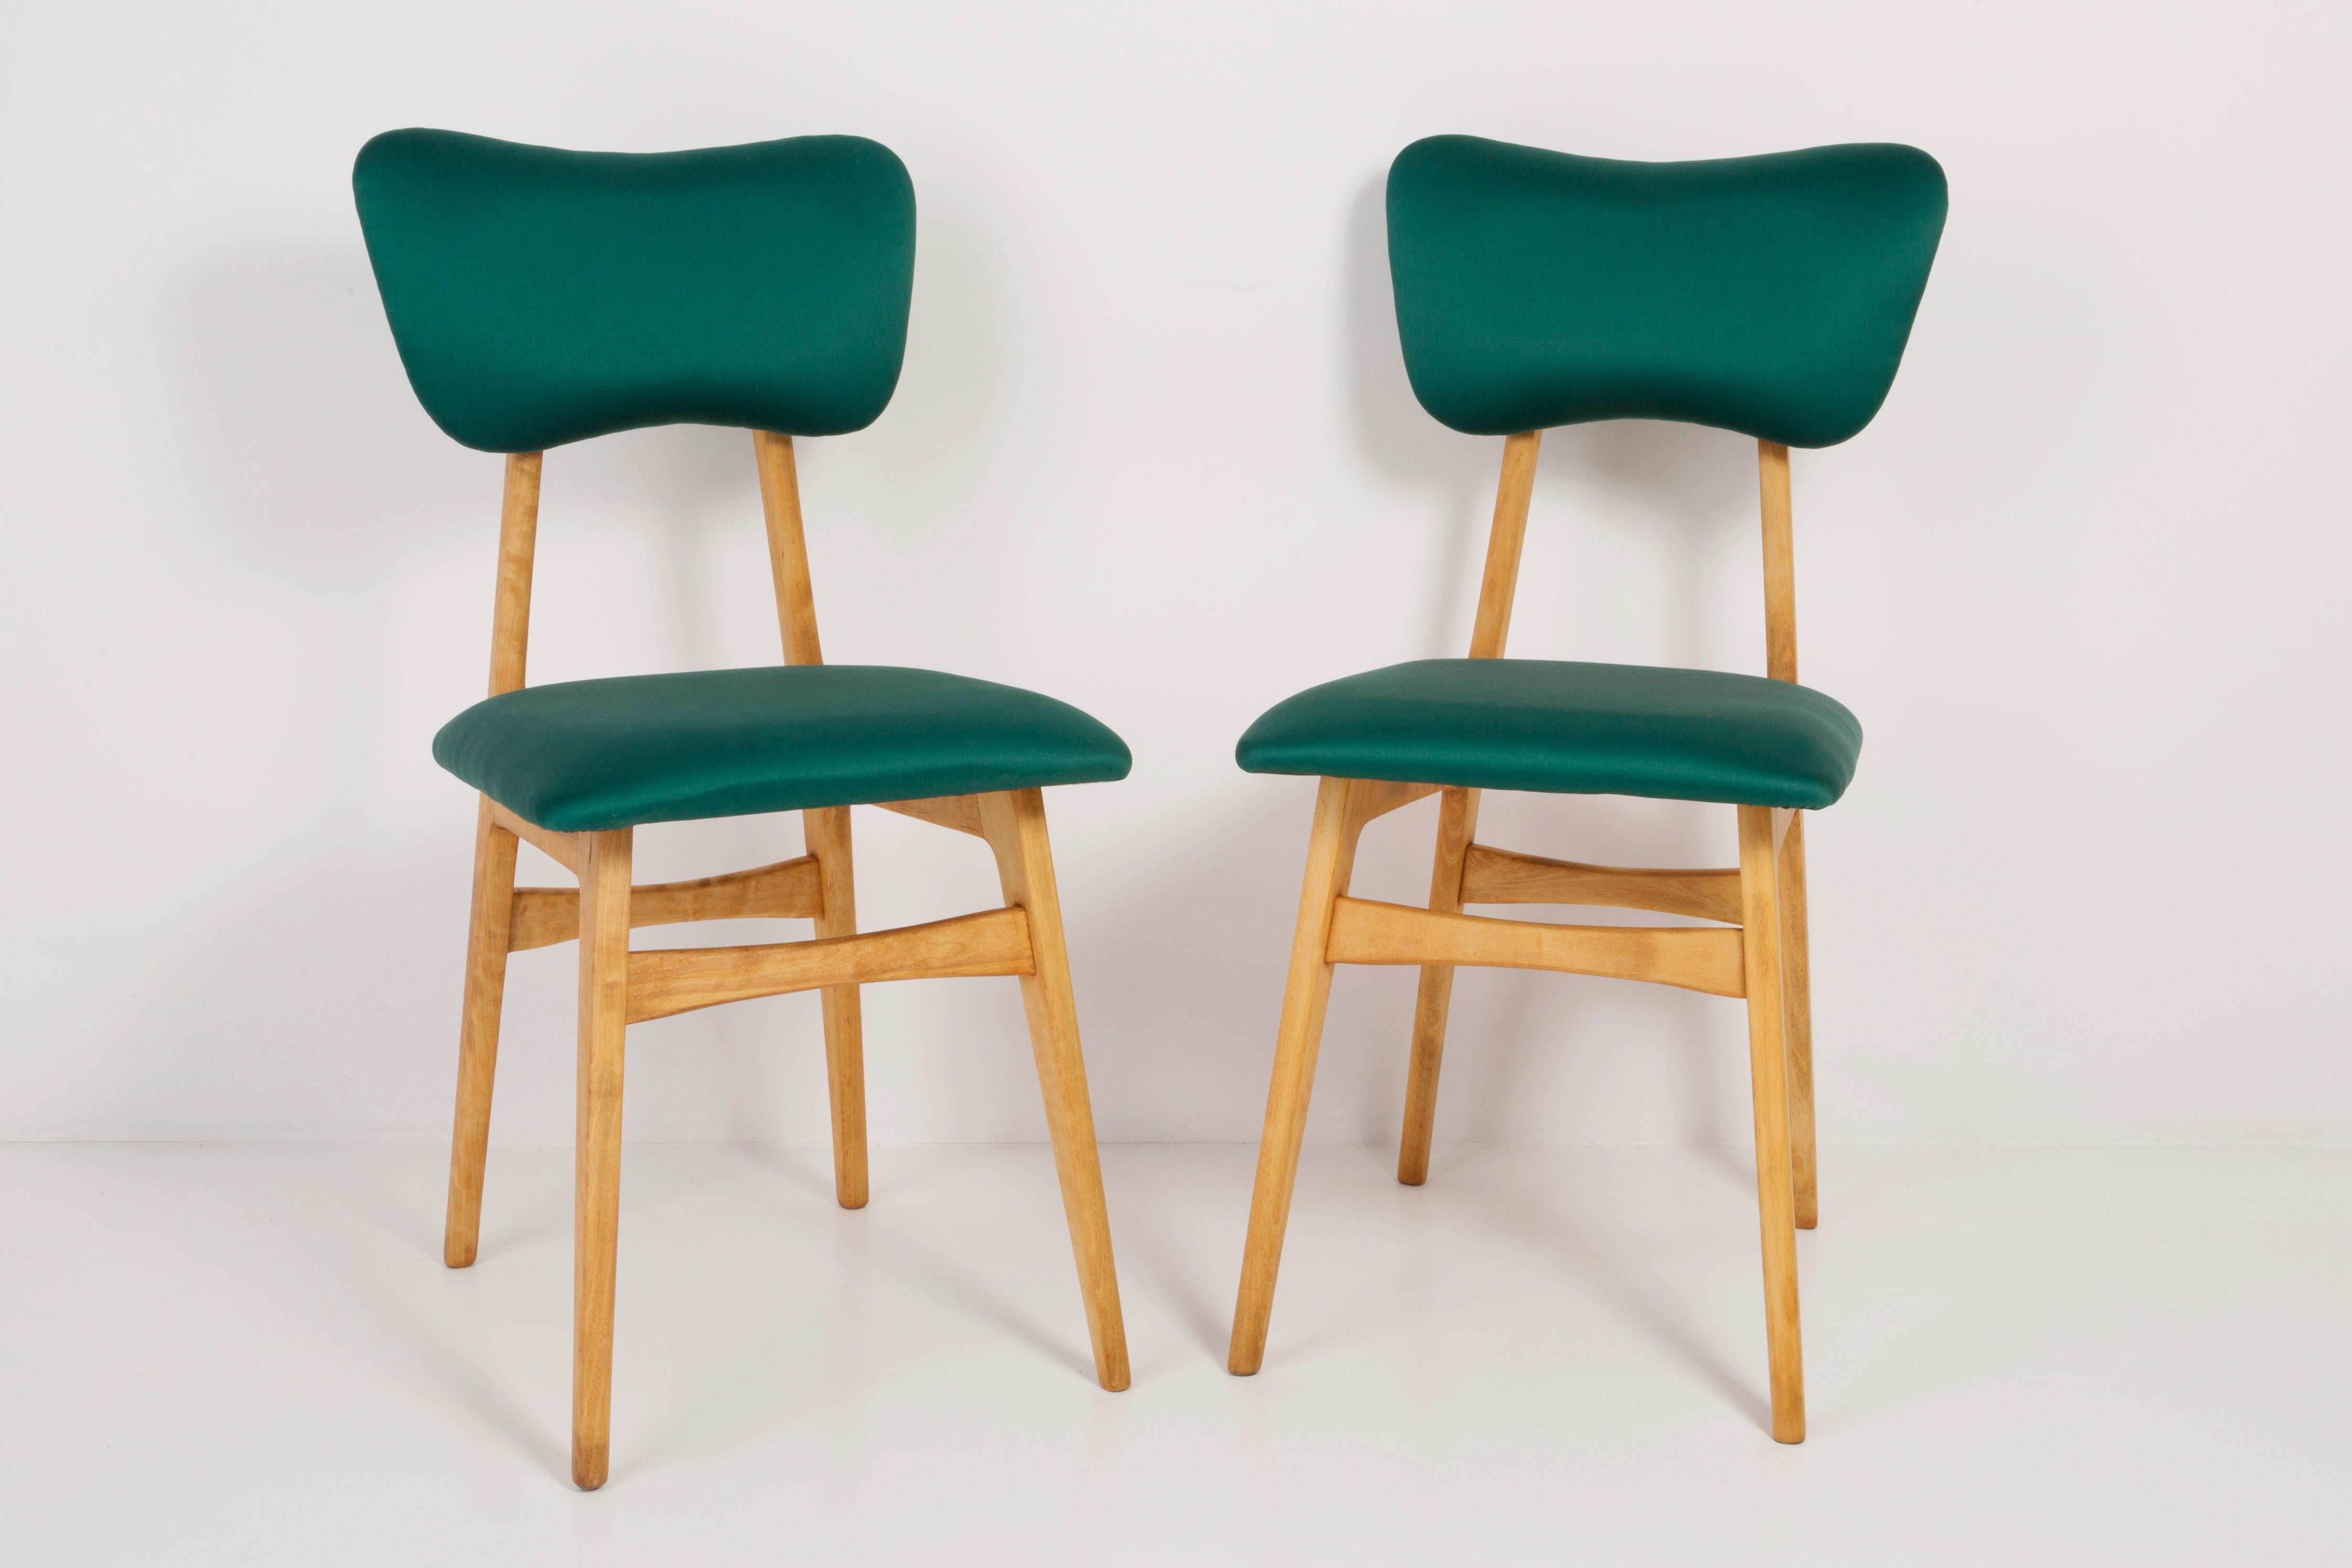 green chair clipart